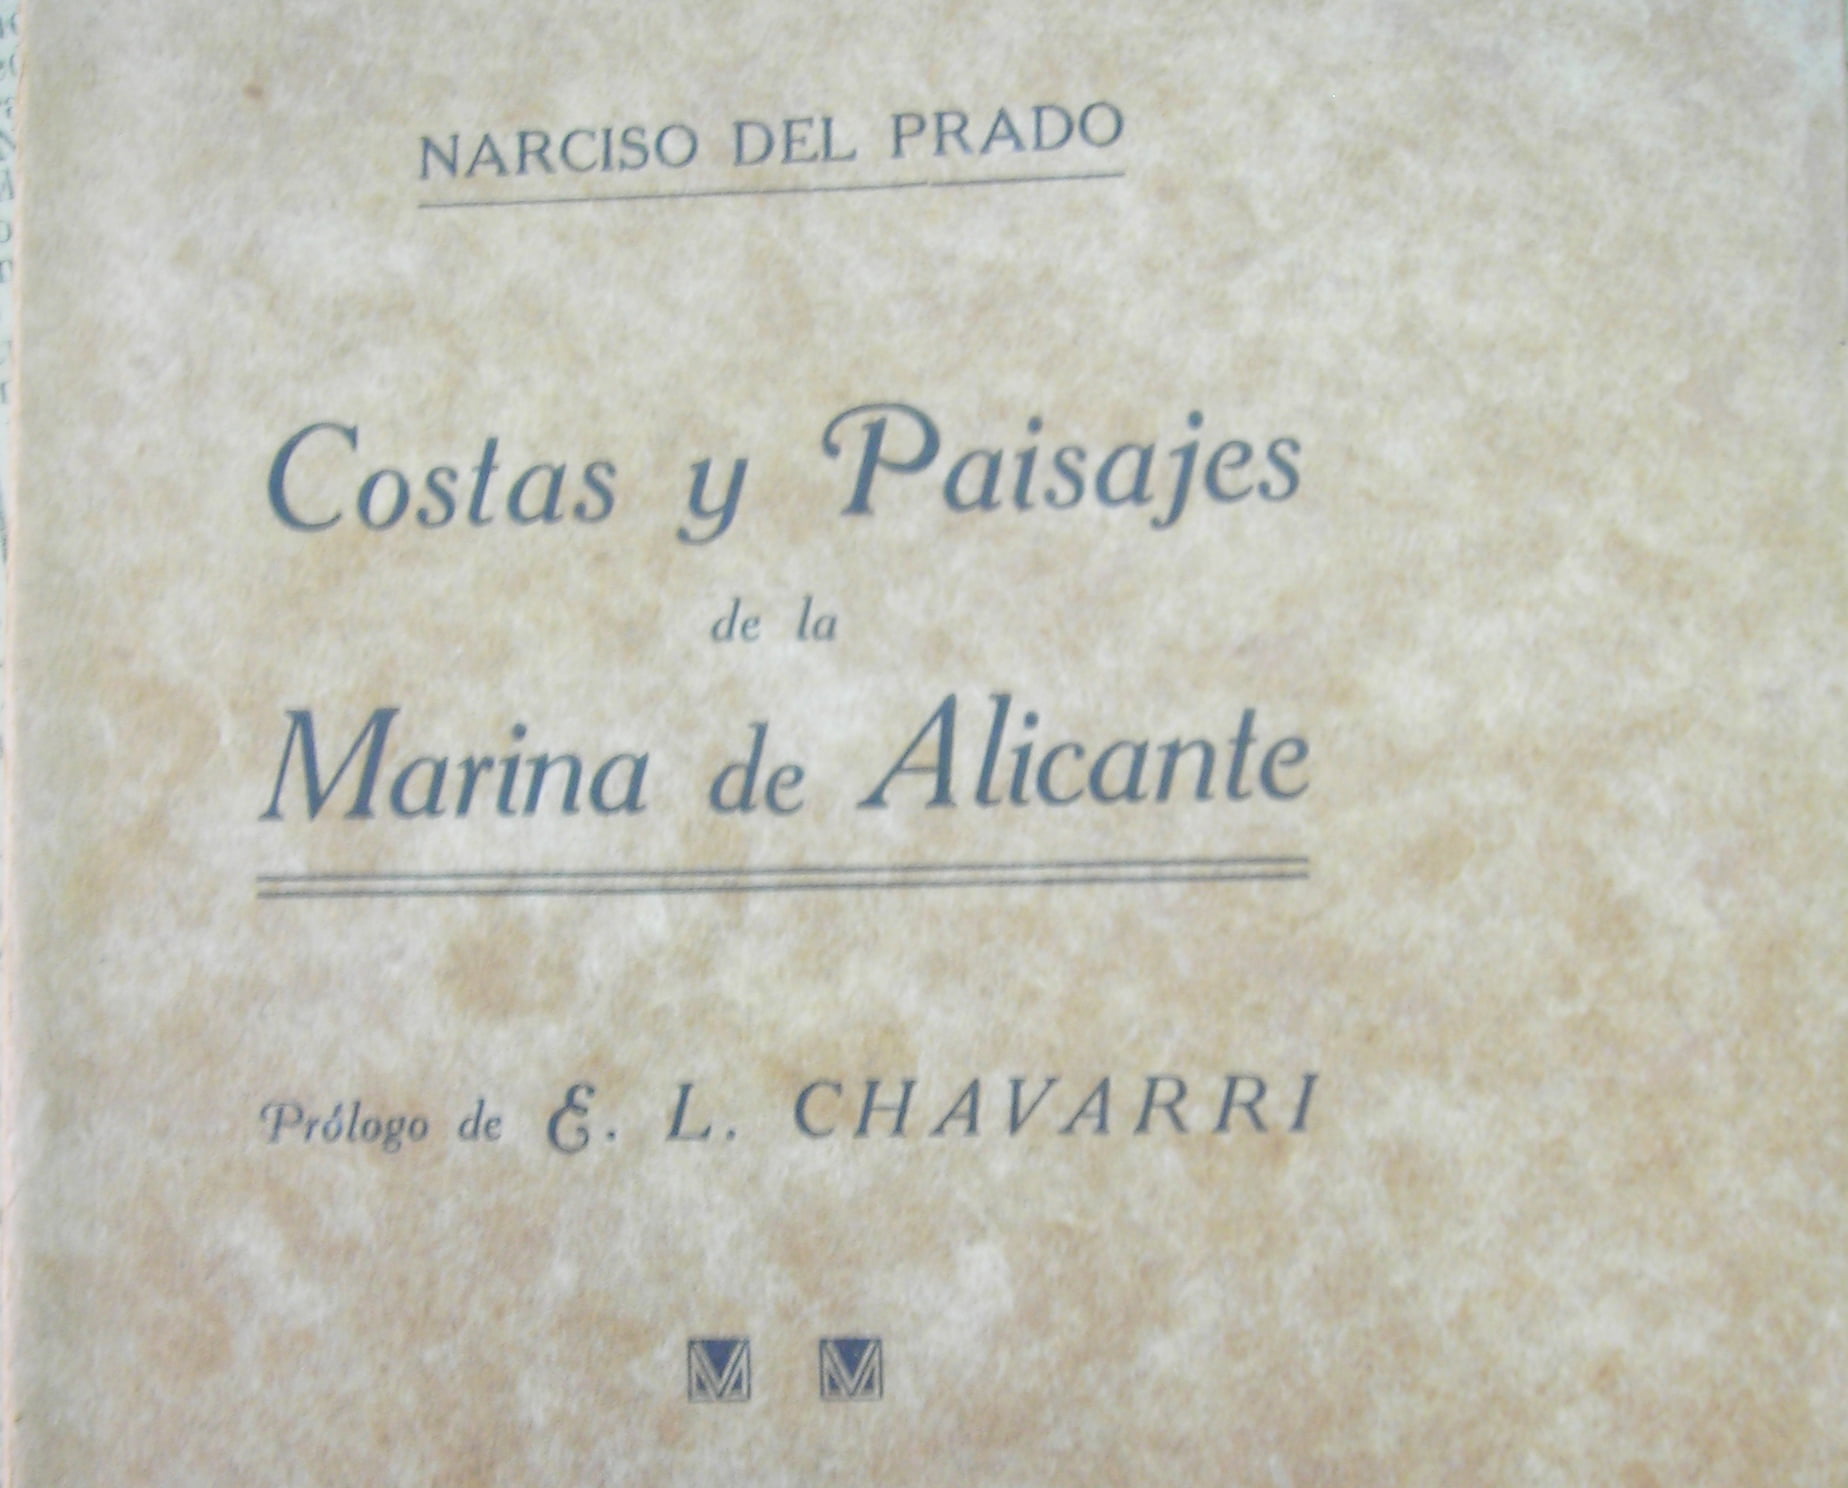 Costas y Paisajes de la Marina de Alicante